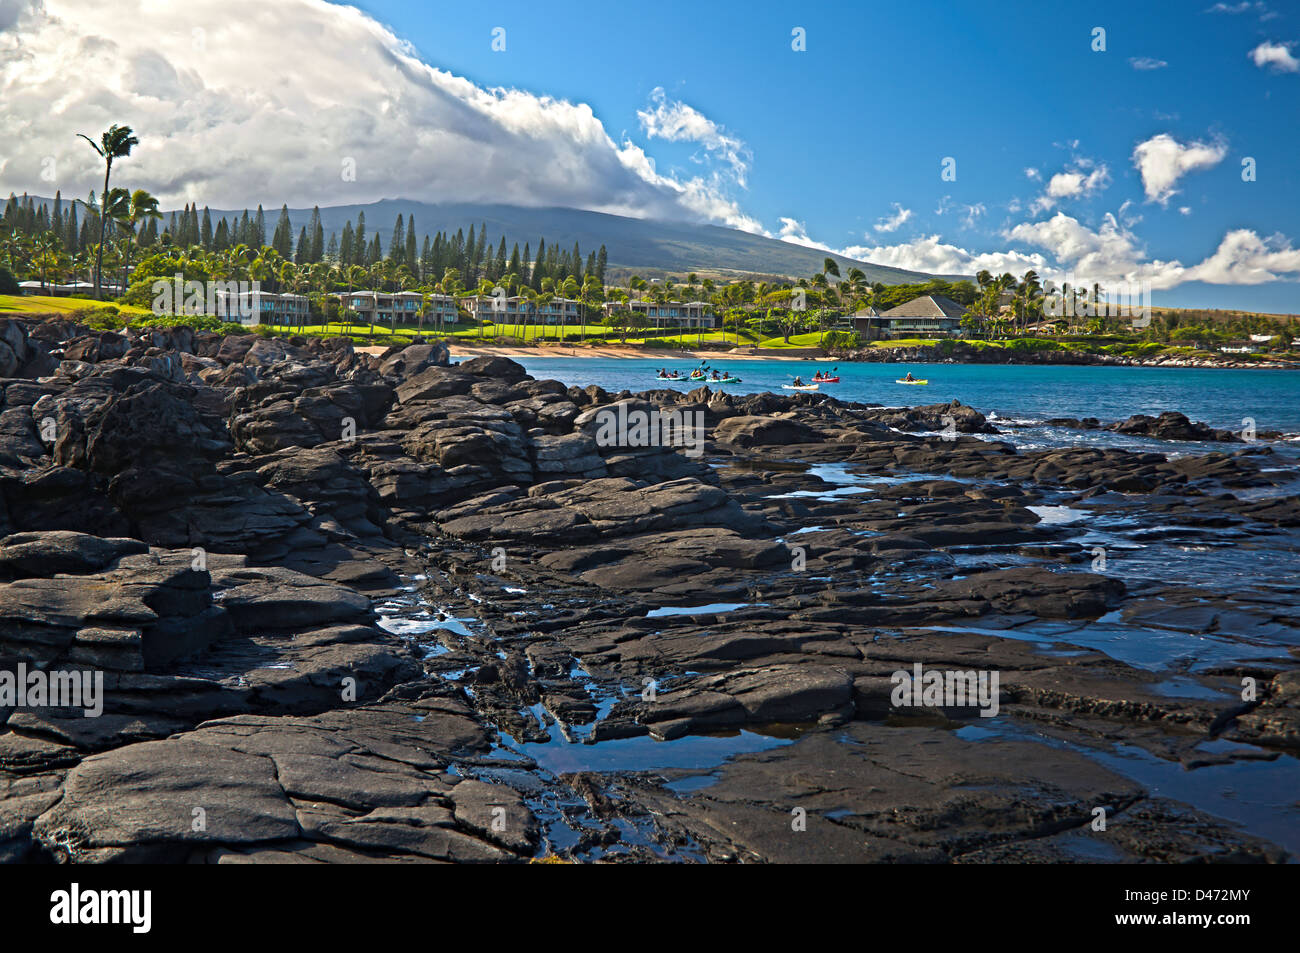 Kajak-Gruppe in Kapalua Bay, Maui, Hawaii. Drei Aufnahmen wurden digital kombiniert, um dieses HDR-Bild zu erstellen. Stockfoto